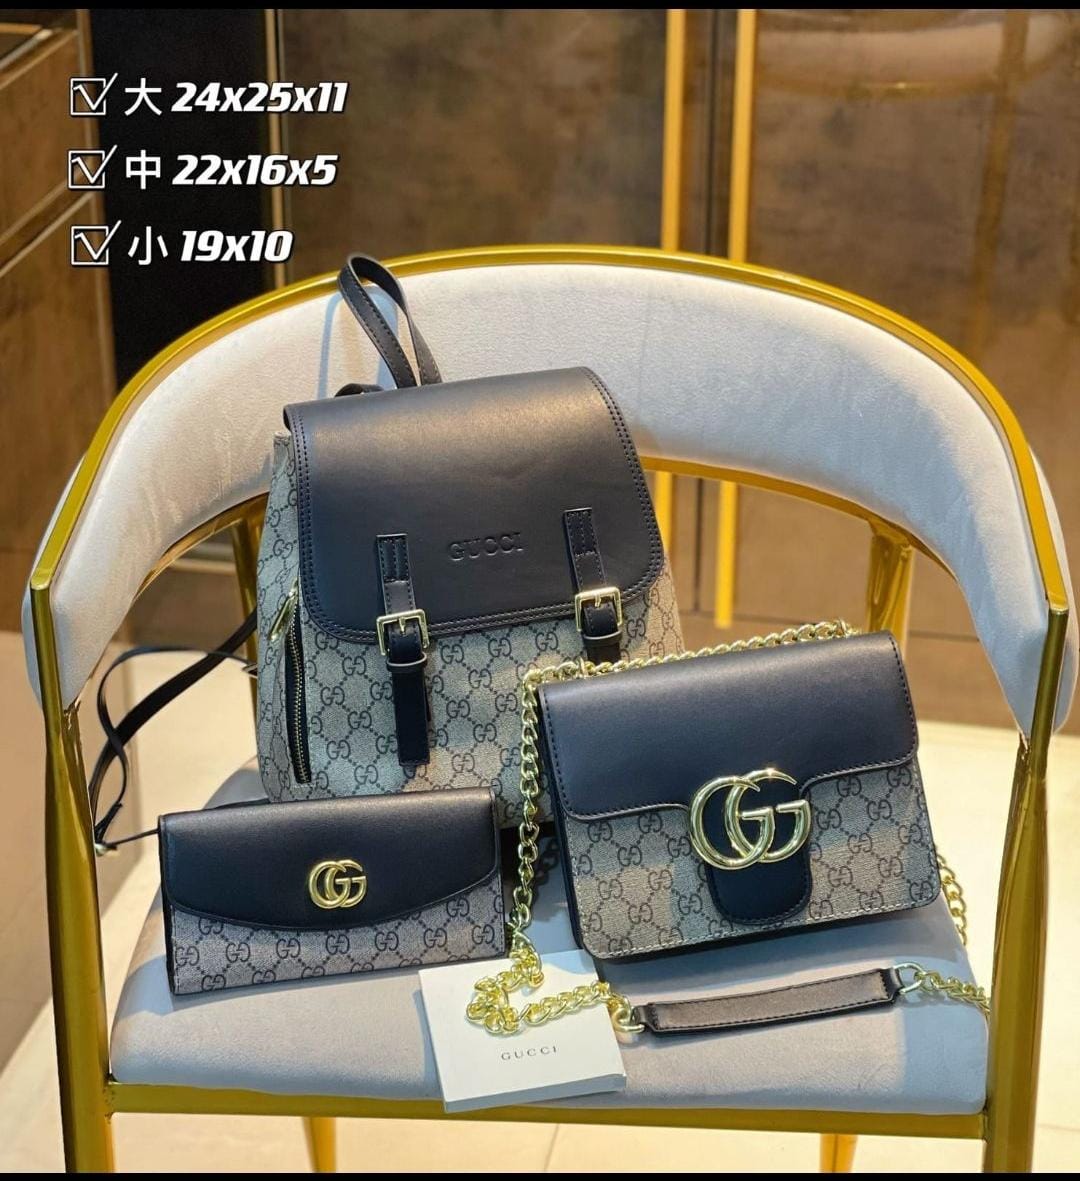 Gucci Handbags Set